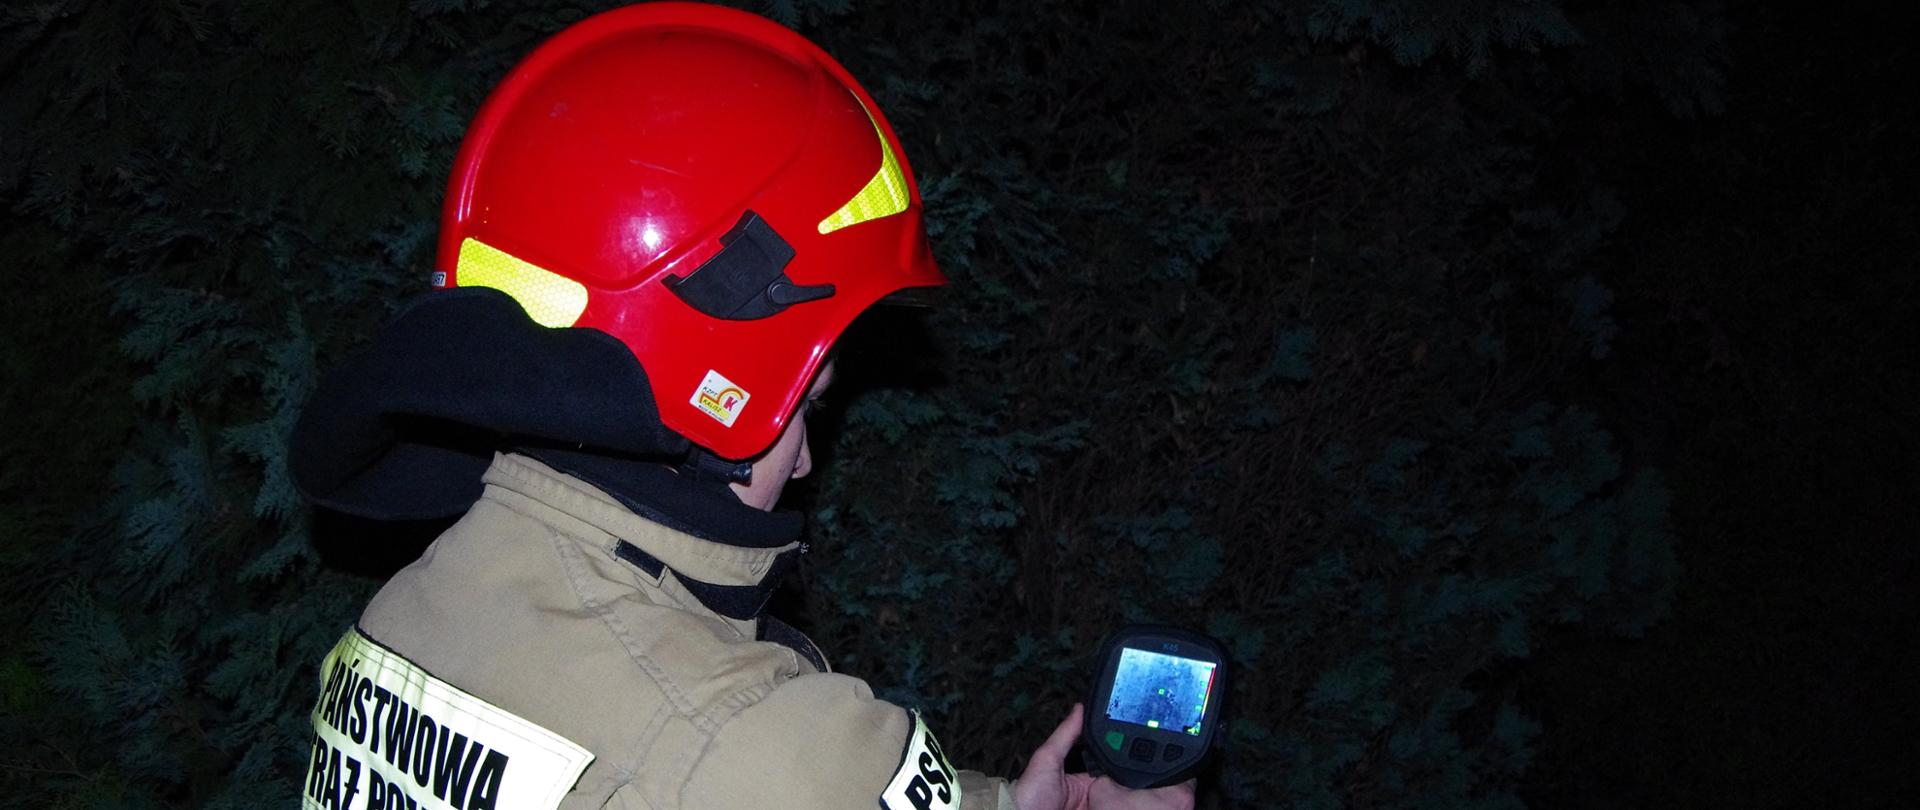 Widok z tyłu. Pora nocna - strażak w ubraniu specjalnym i czerwonym hełmie trzyma w ręku kamerę termowizyjną. 